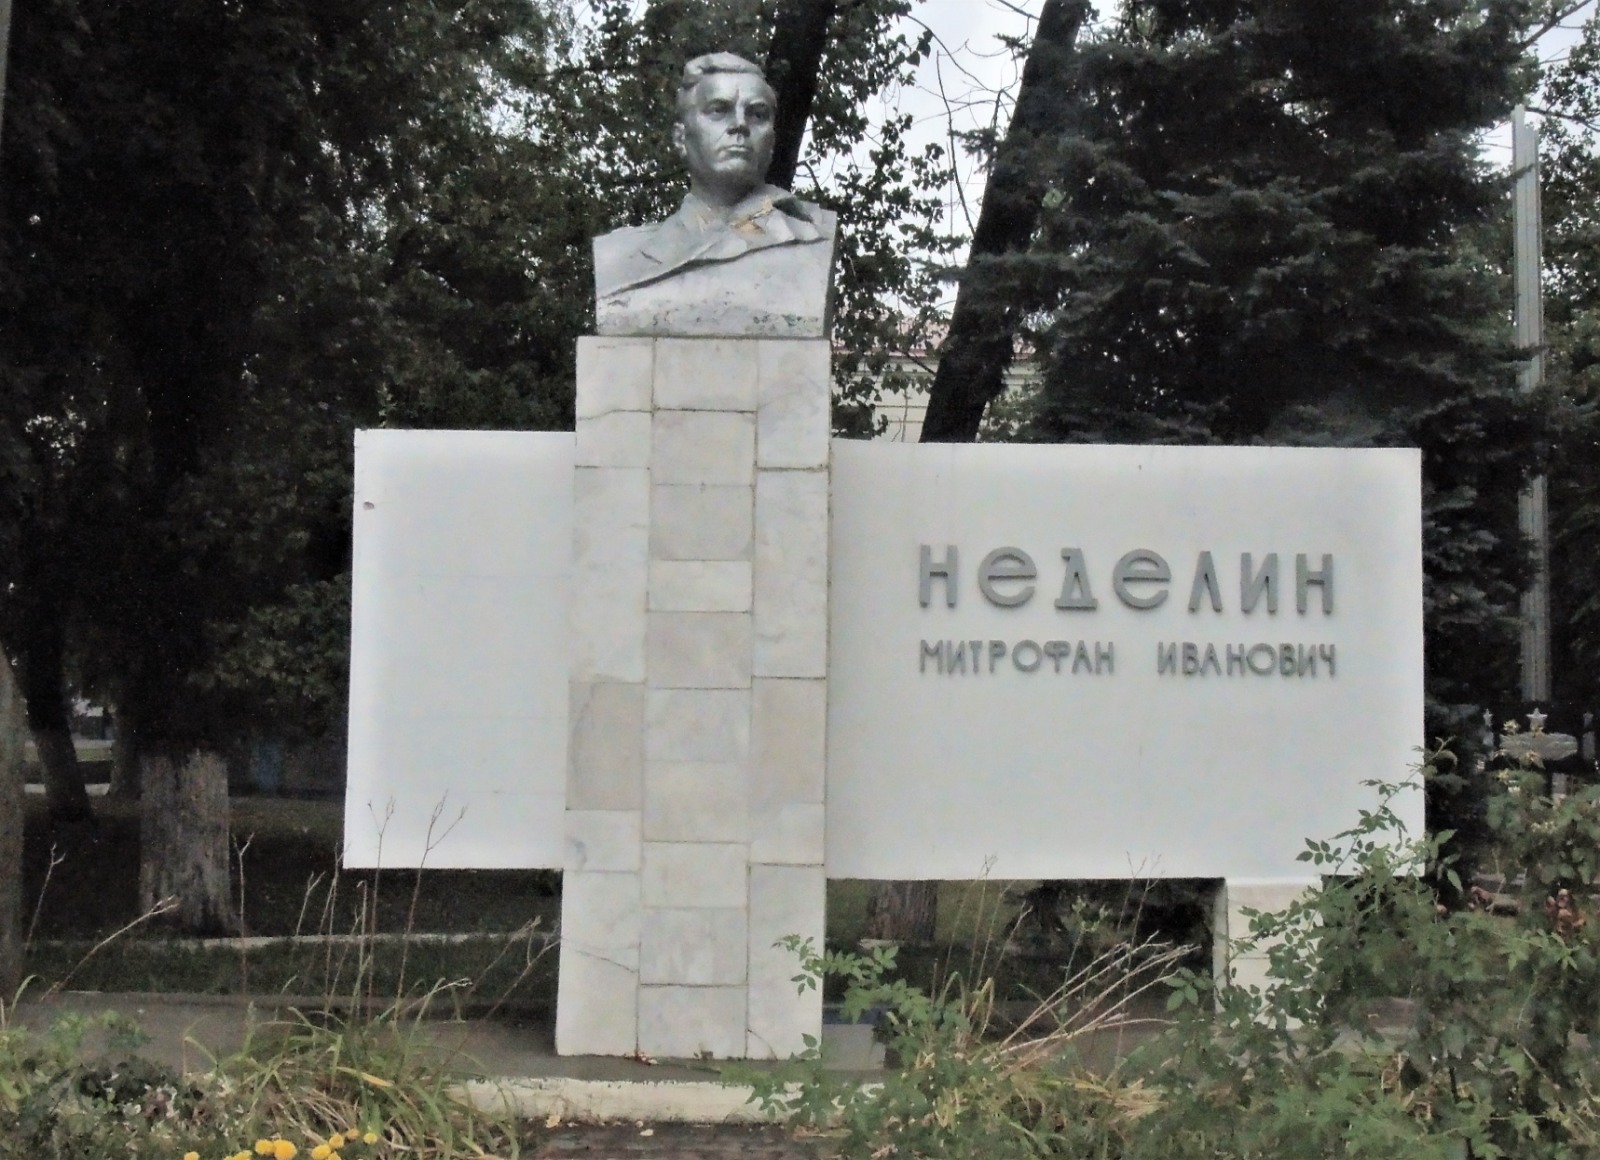 Ростовские ветераны начали сбор средств на реконструкцию памятника главного маршала артиллерии Митрофана Неделина